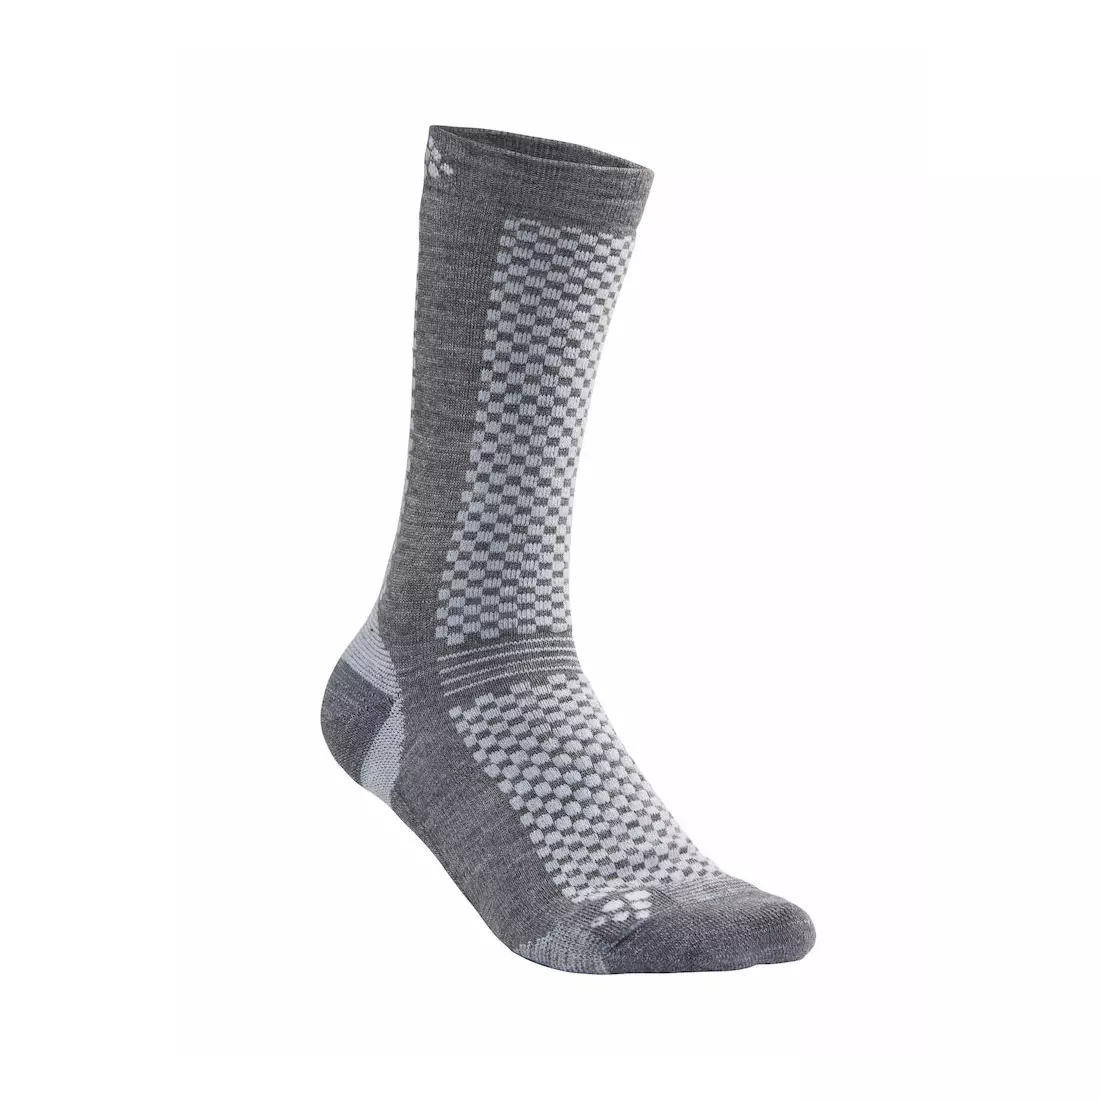 CRAFT WARM WOOL MID 1905544-985920 ponožky 2balení šedé